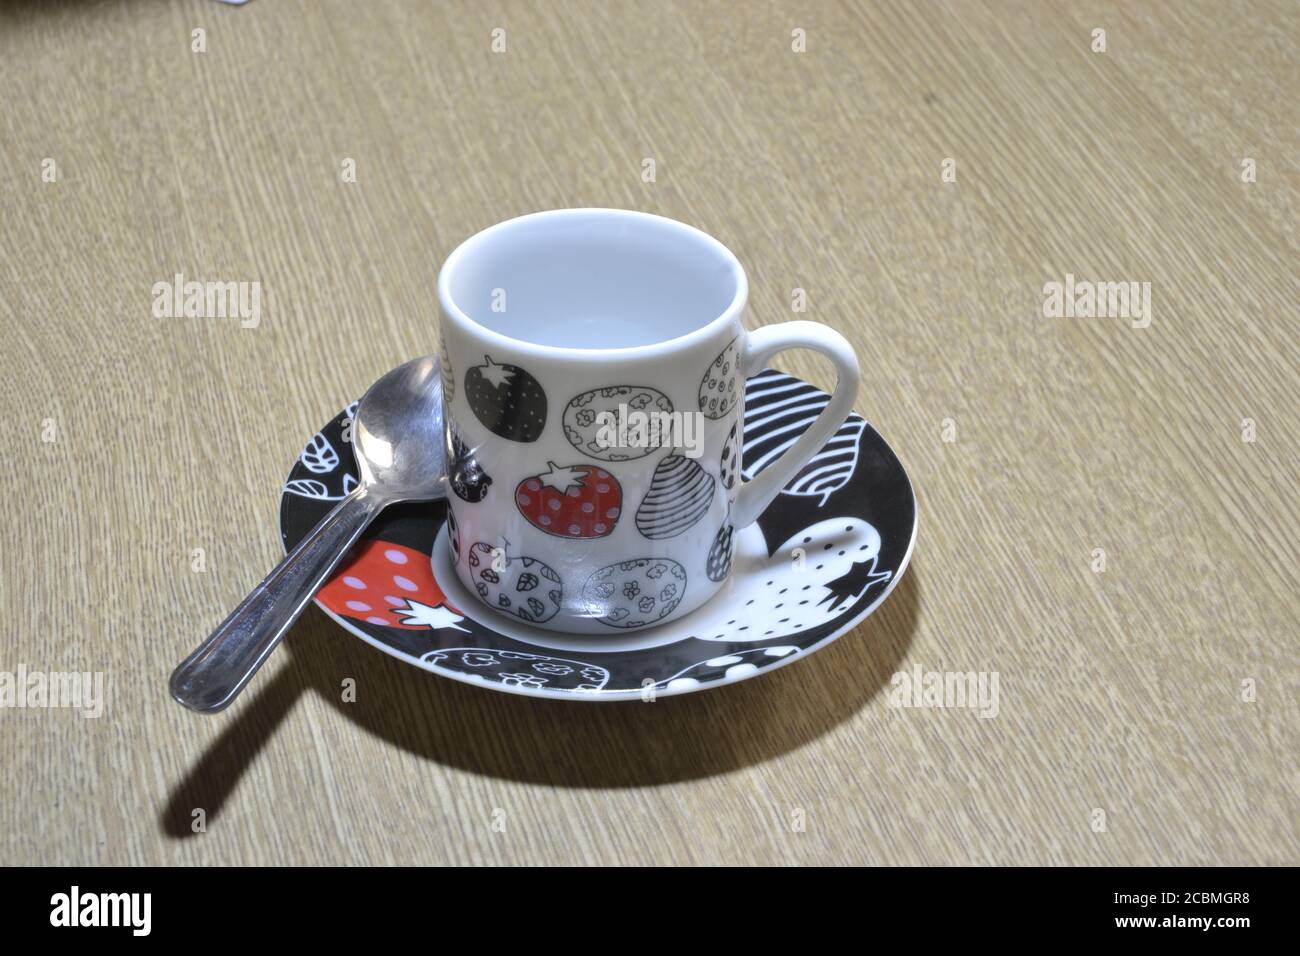 Tazza di caffè multicolore con piattino come base con disegni colorati e cucchiaio su sfondo di legno. Foto Stock